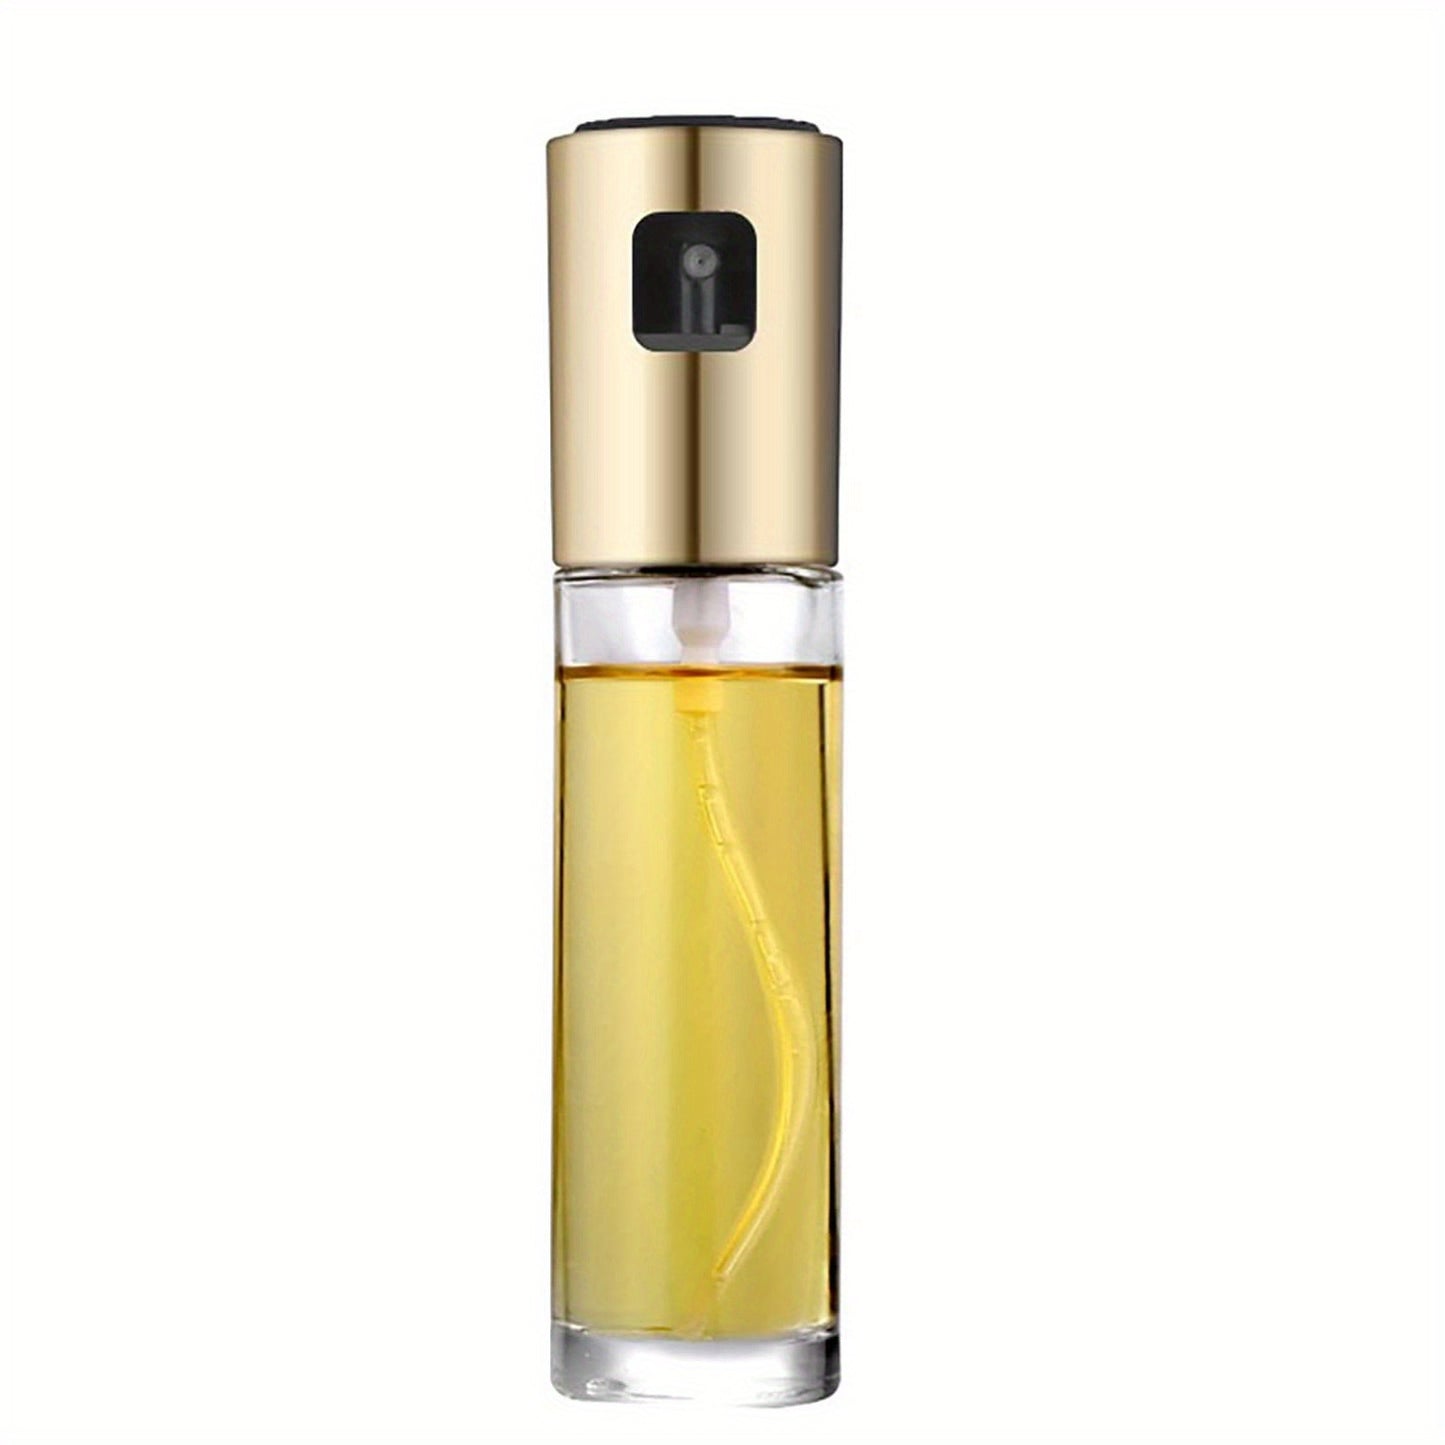 Reusable Glass Oil Sprayer - 100ml/3.5oz - Ideal for Cooking - Olive Oil Mister Spray Bottle - Dispenser Spray Bottle